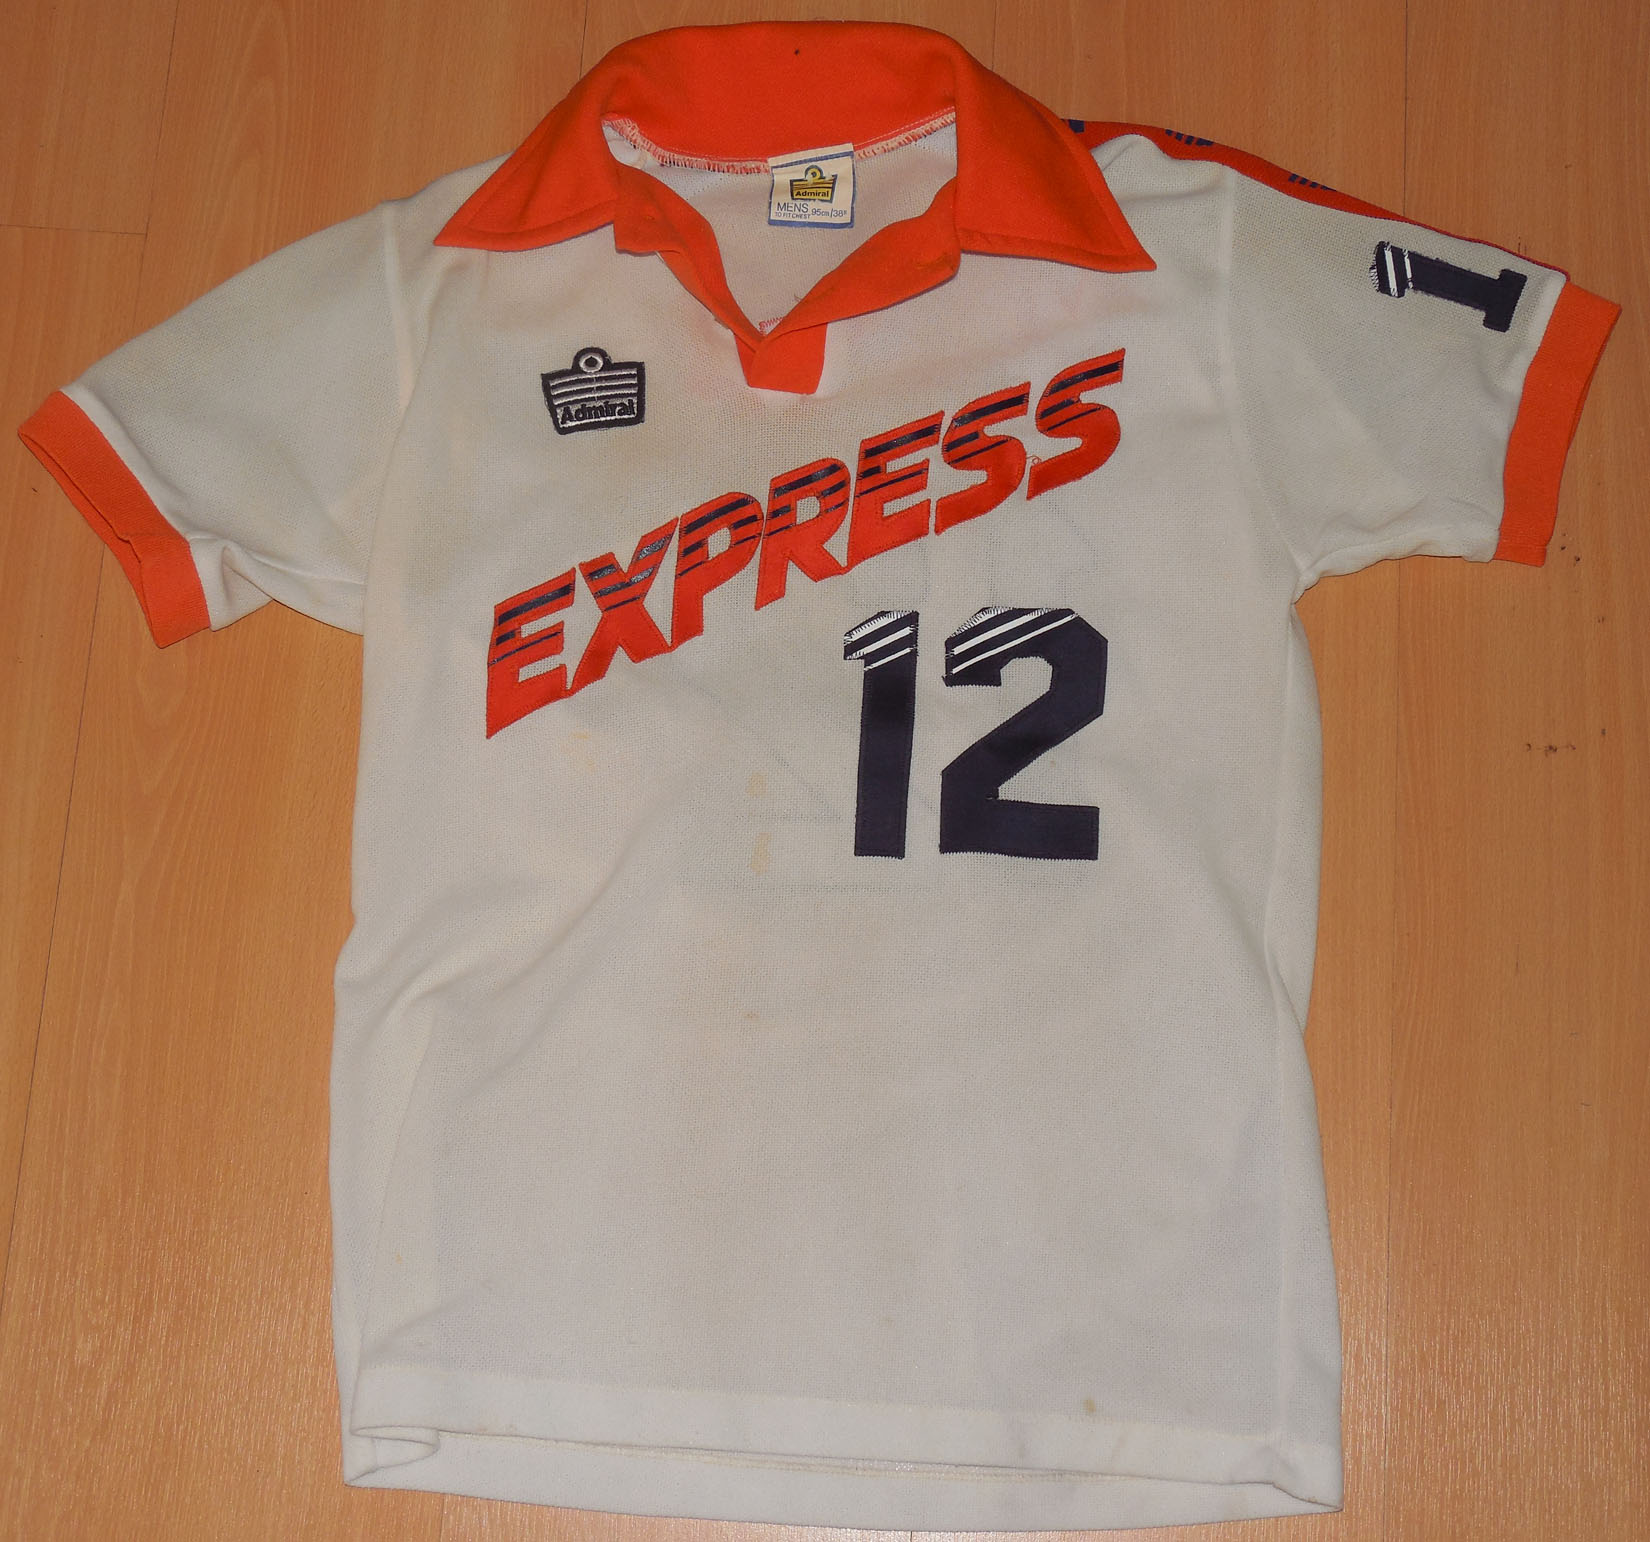 jersey express